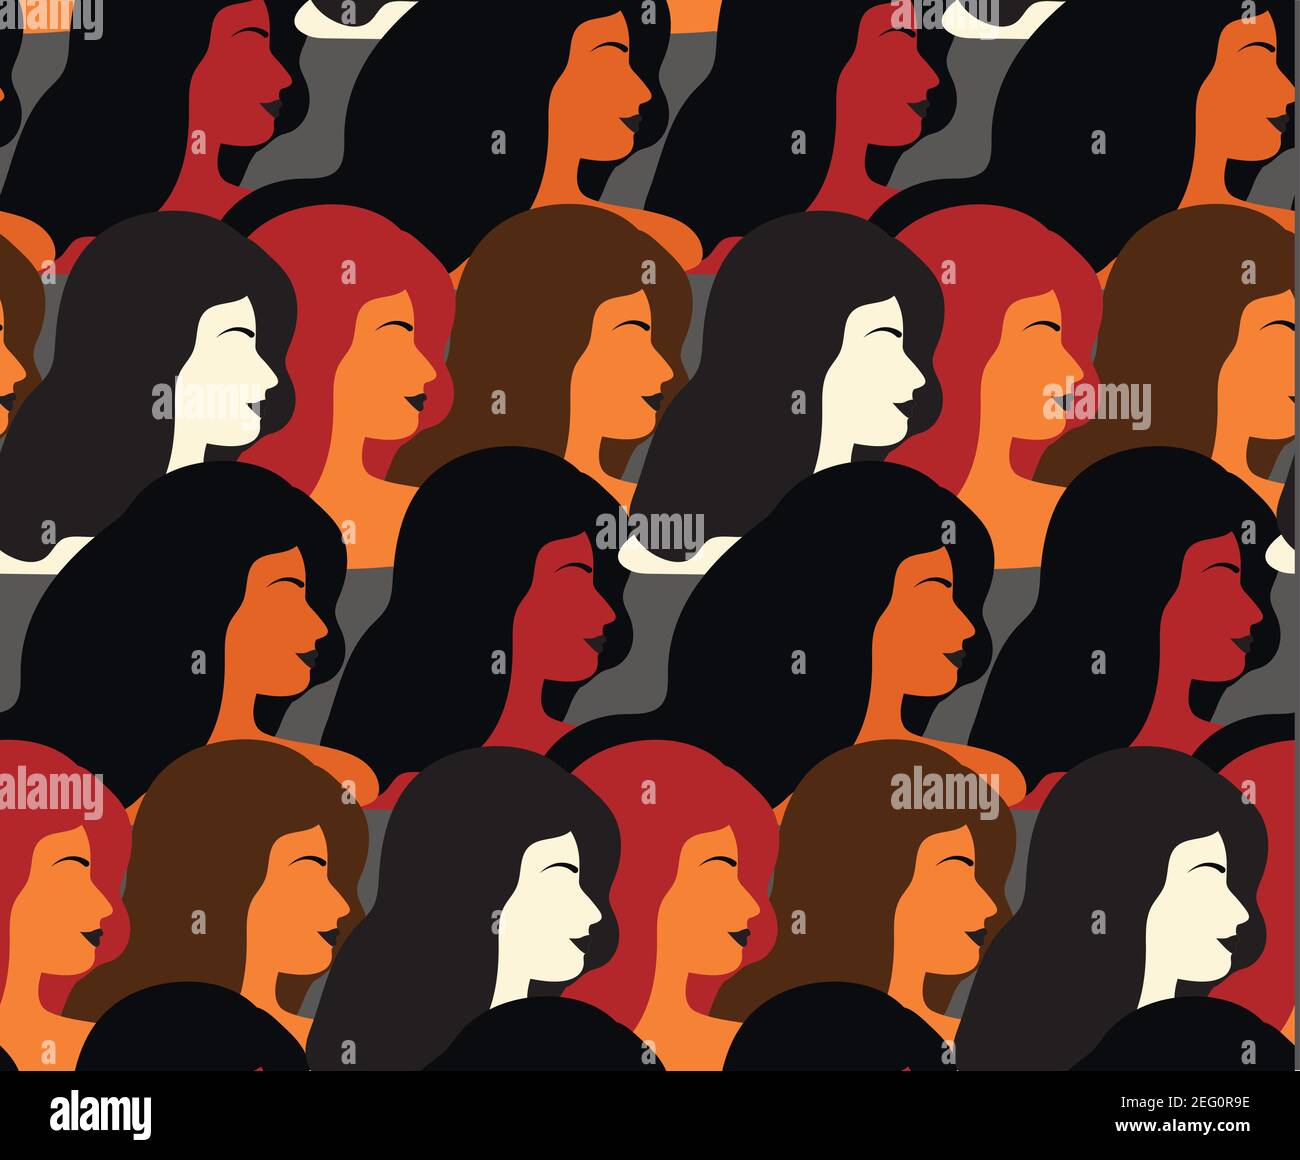 Internationaler Frauentag 8. März. Vektor-Illustration mit Frauen verschiedener Nationalitäten und Kulturen. Kampf für Freiheit, Unabhängigkeit, Gleichheit Stock Vektor